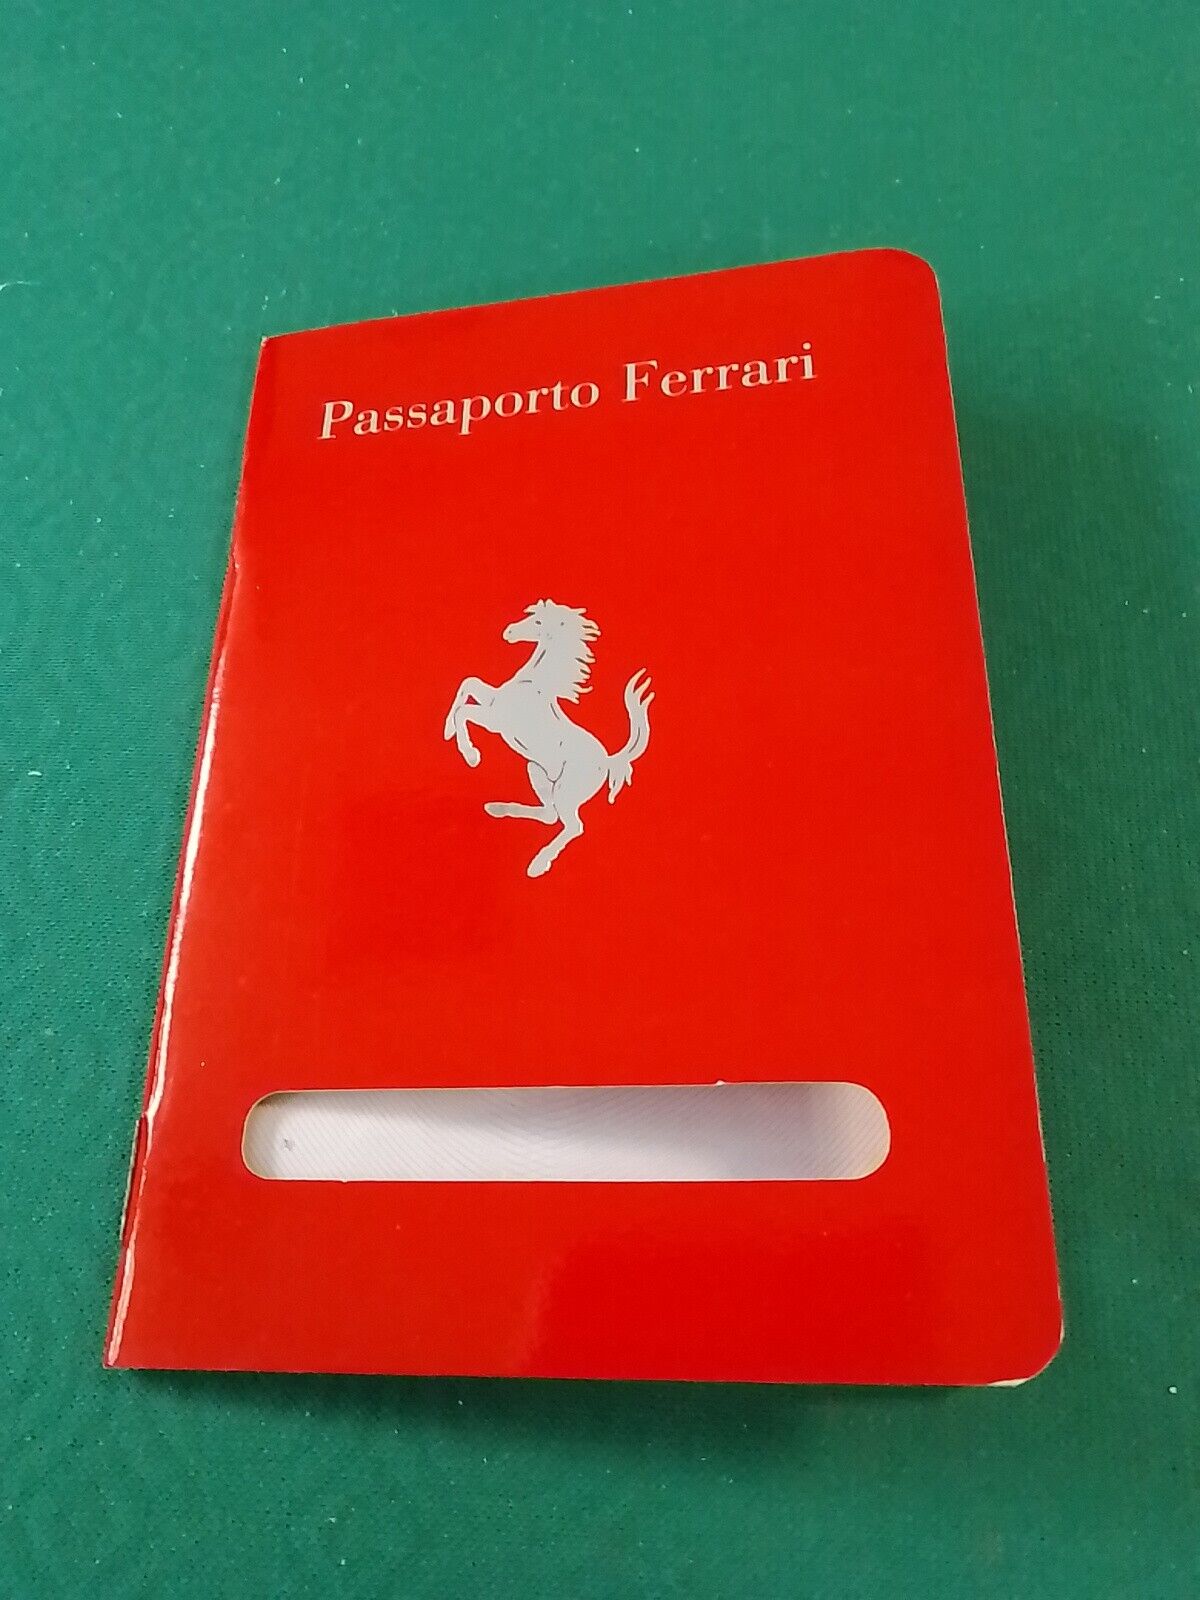 Passport  Ferrari 50th Anniversary, Passaporto Ferrari 1997.